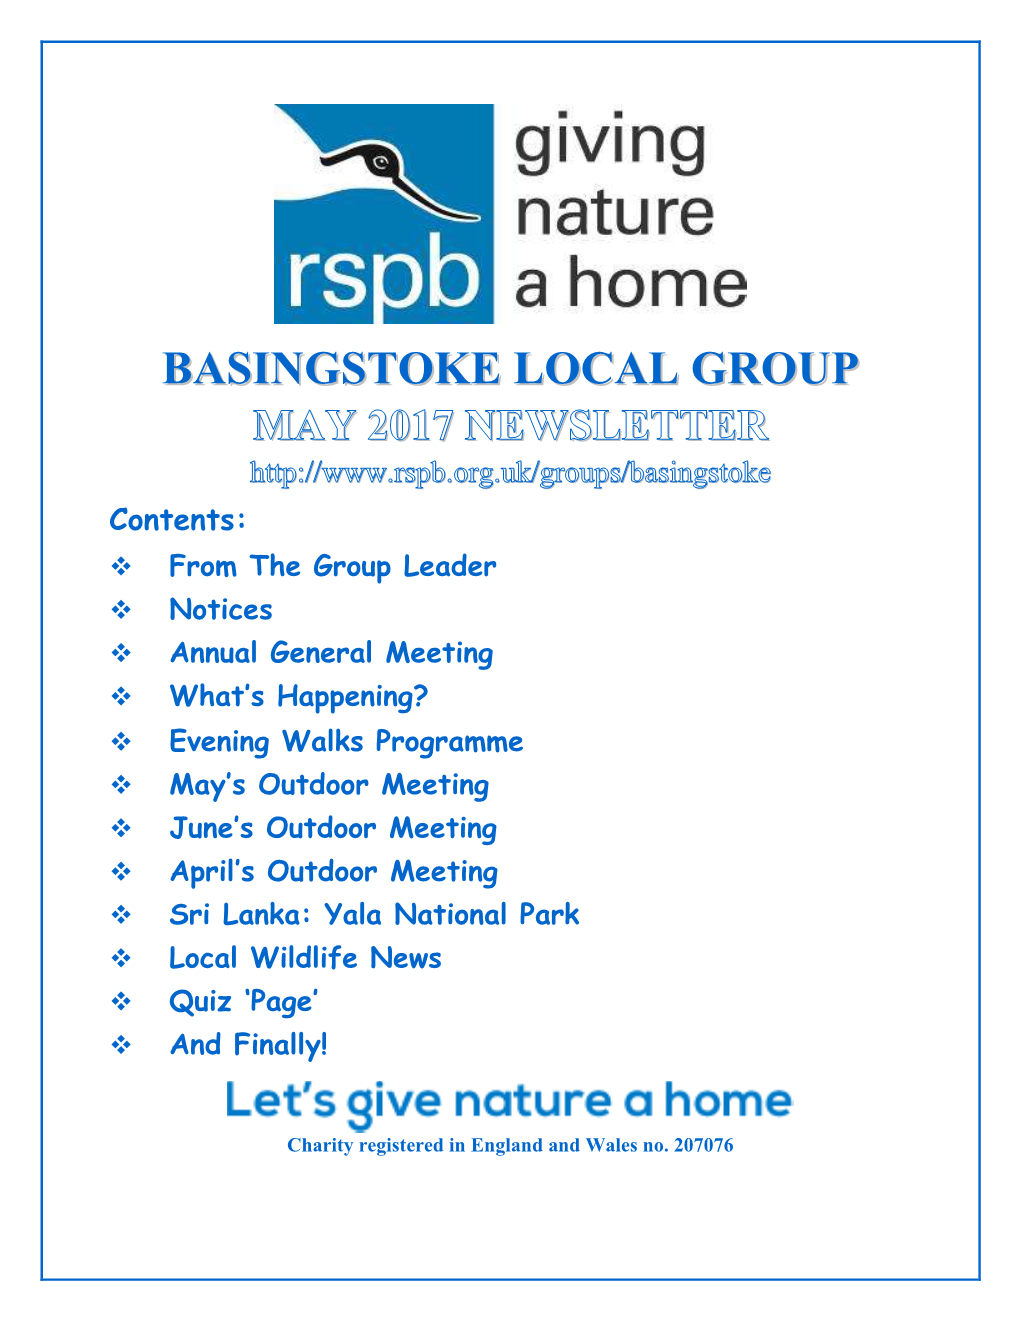 Basingstoke Local Group Annual General Meeting